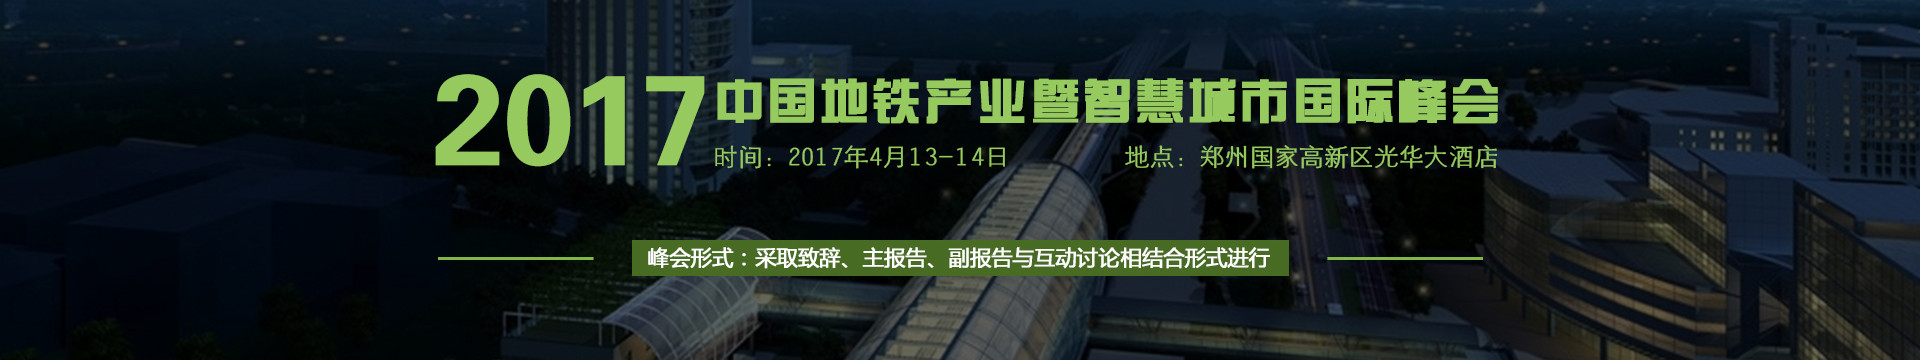 2017中国地铁产业暨智慧城市国际峰会